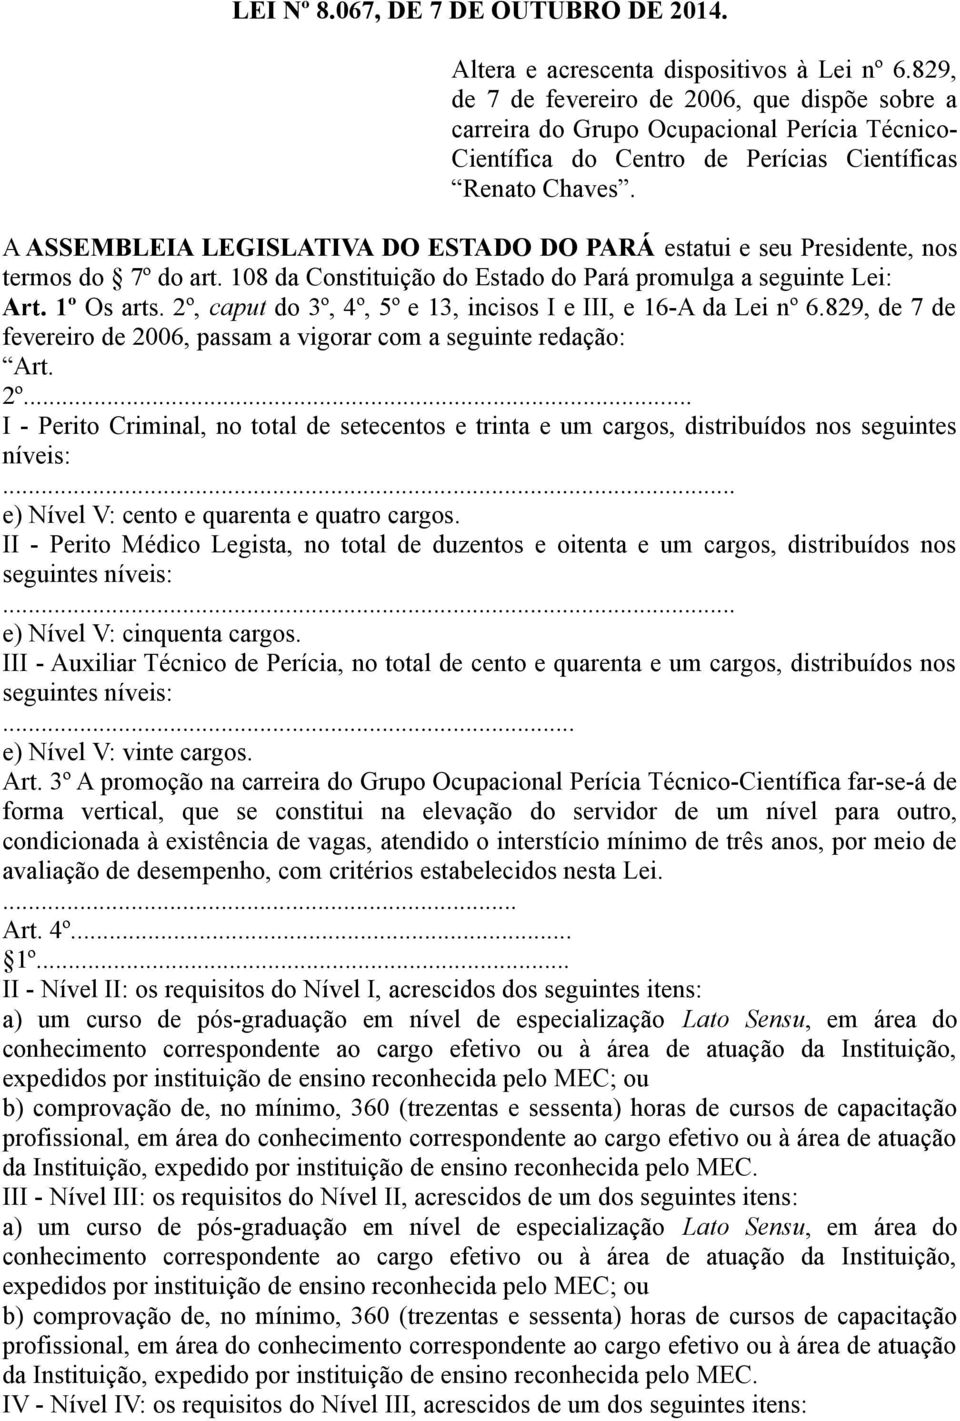 A ASSEMBLEIA LEGISLATIVA DO ESTADO DO PARÁ estatui e seu Presidente, nos termos do 7º do art. 108 da Constituição do Estado do Pará promulga a seguinte Lei: Art. 1º Os arts.